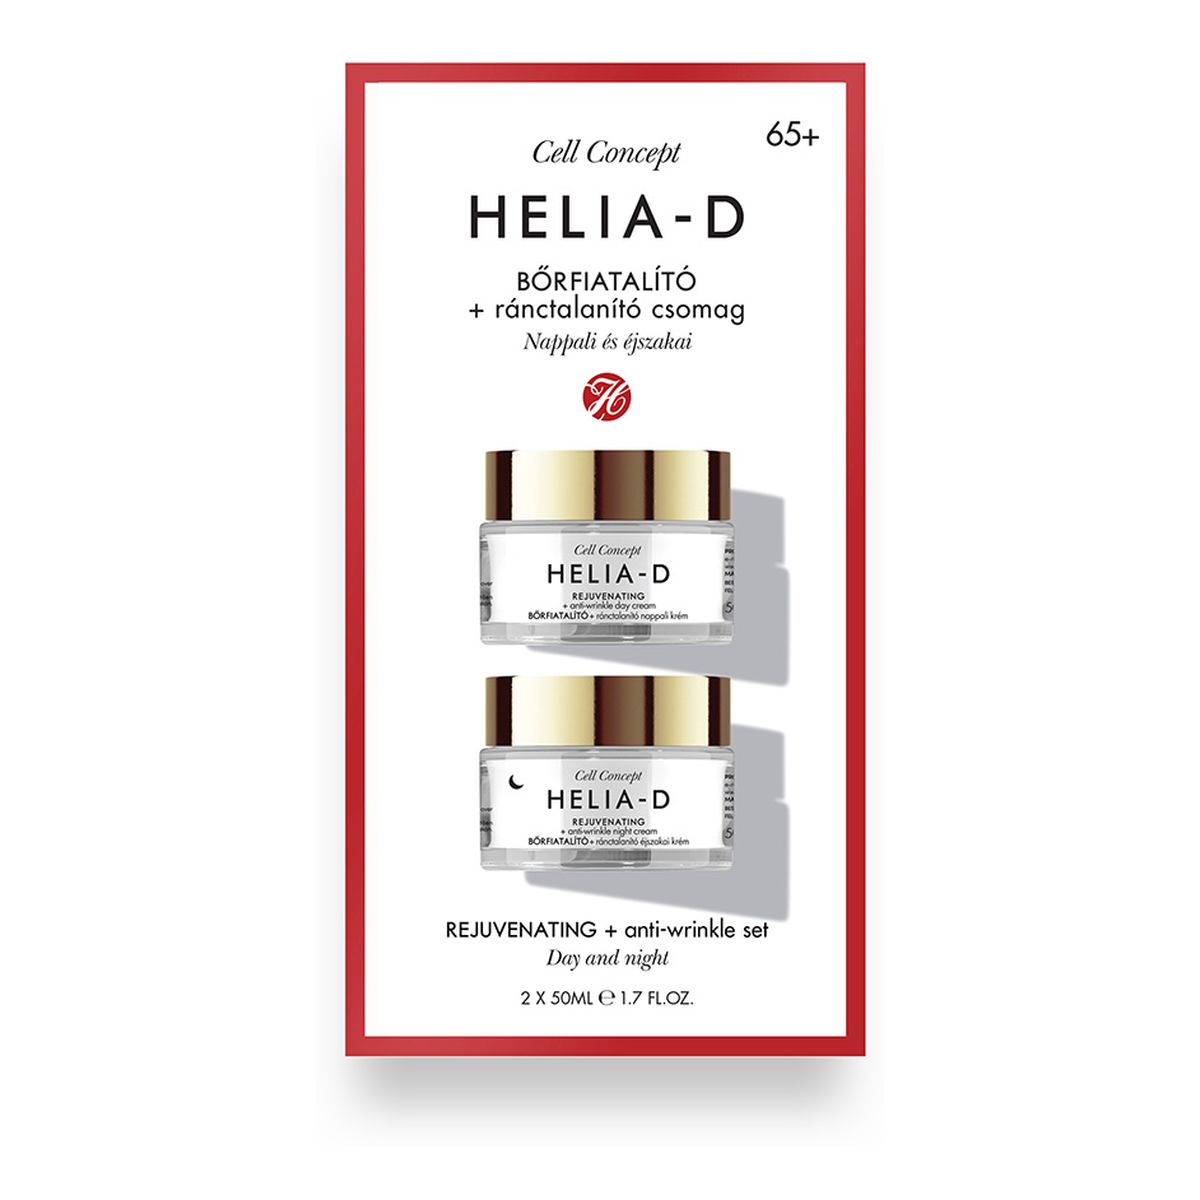 Helia-D Cell Concept Rejuvenating + Anti-wrinkle 65+ Zestaw przeciwzmarszczkowy krem na dzień + przeciwzmarszczkowy krem na noc 2×50ml